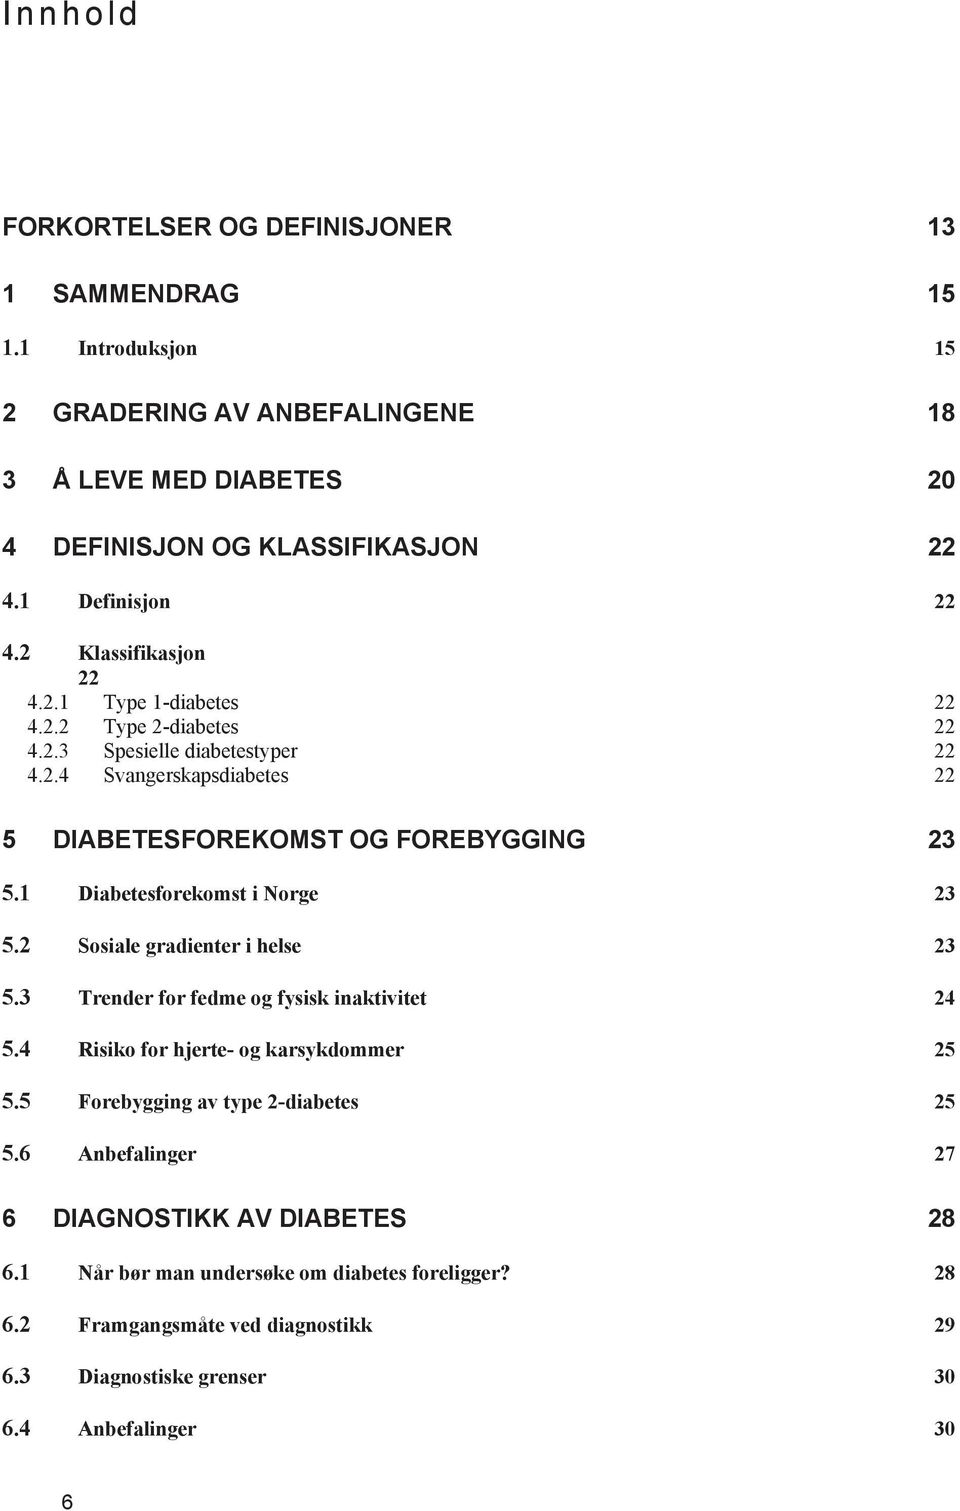 1 Diabetesforekomst i Norge 23 5.2 Sosiale gradienter i helse 23 5.3 Trender for fedme og fysisk inaktivitet 24 5.4 Risiko for hjerte- og karsykdommer 25 5.